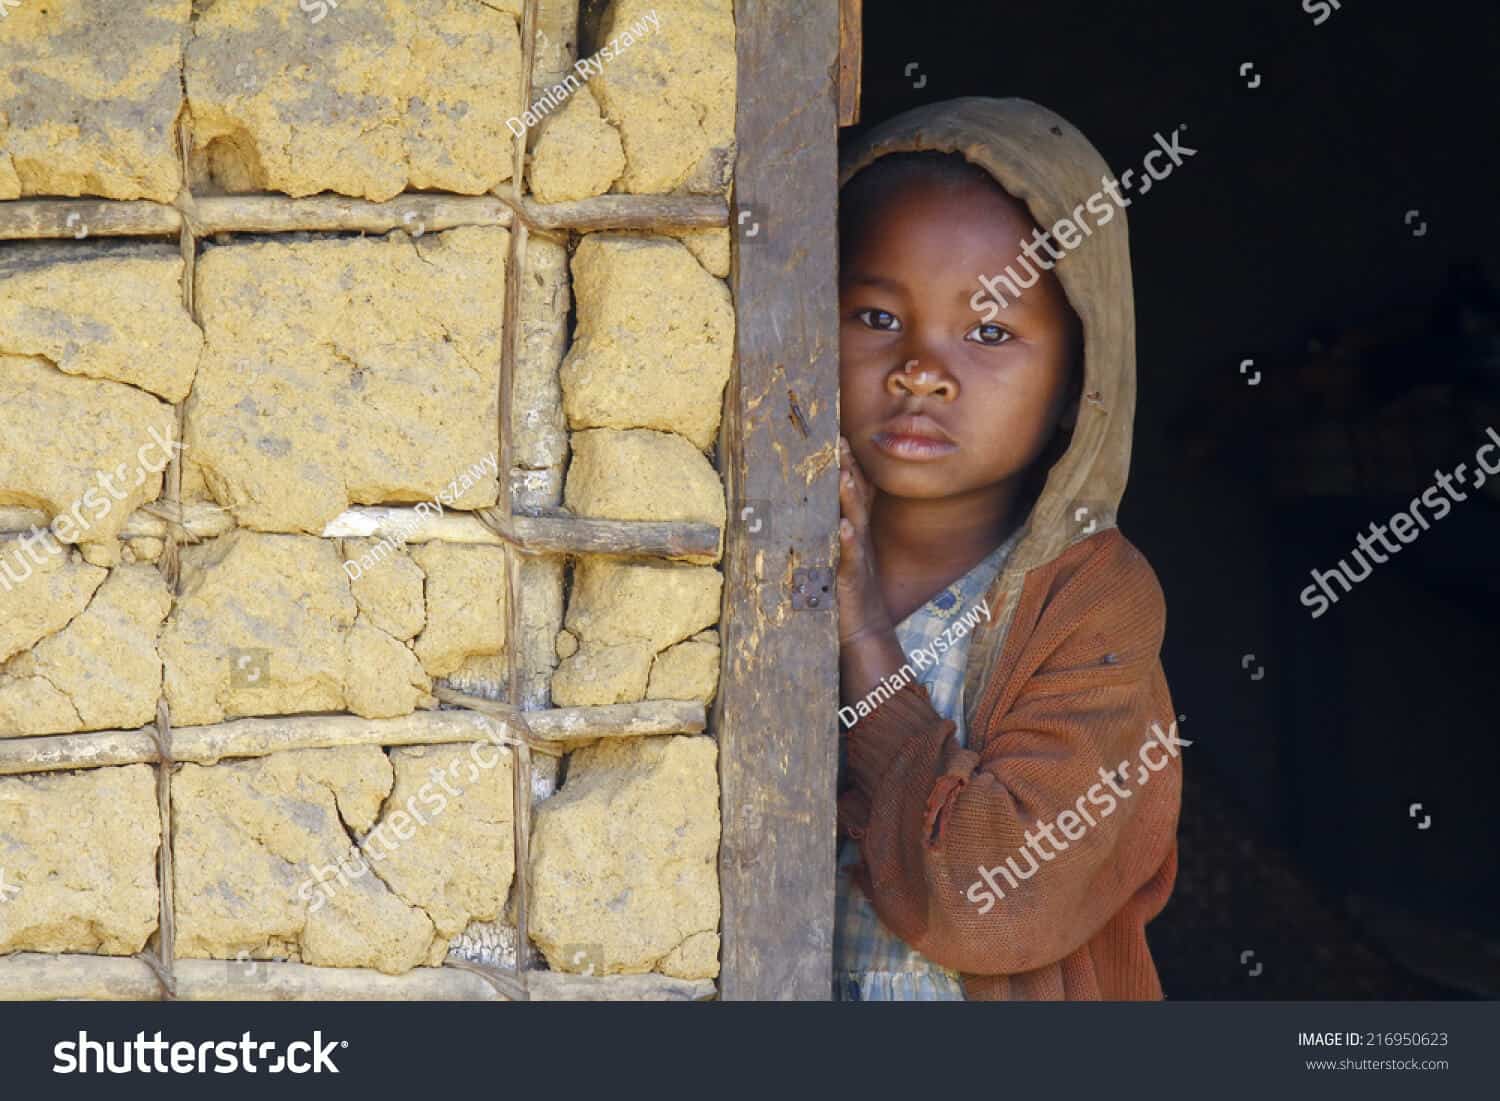 250 ngàn hình ảnh em bé Châu Phi chất lượng cao trên Shutterstock